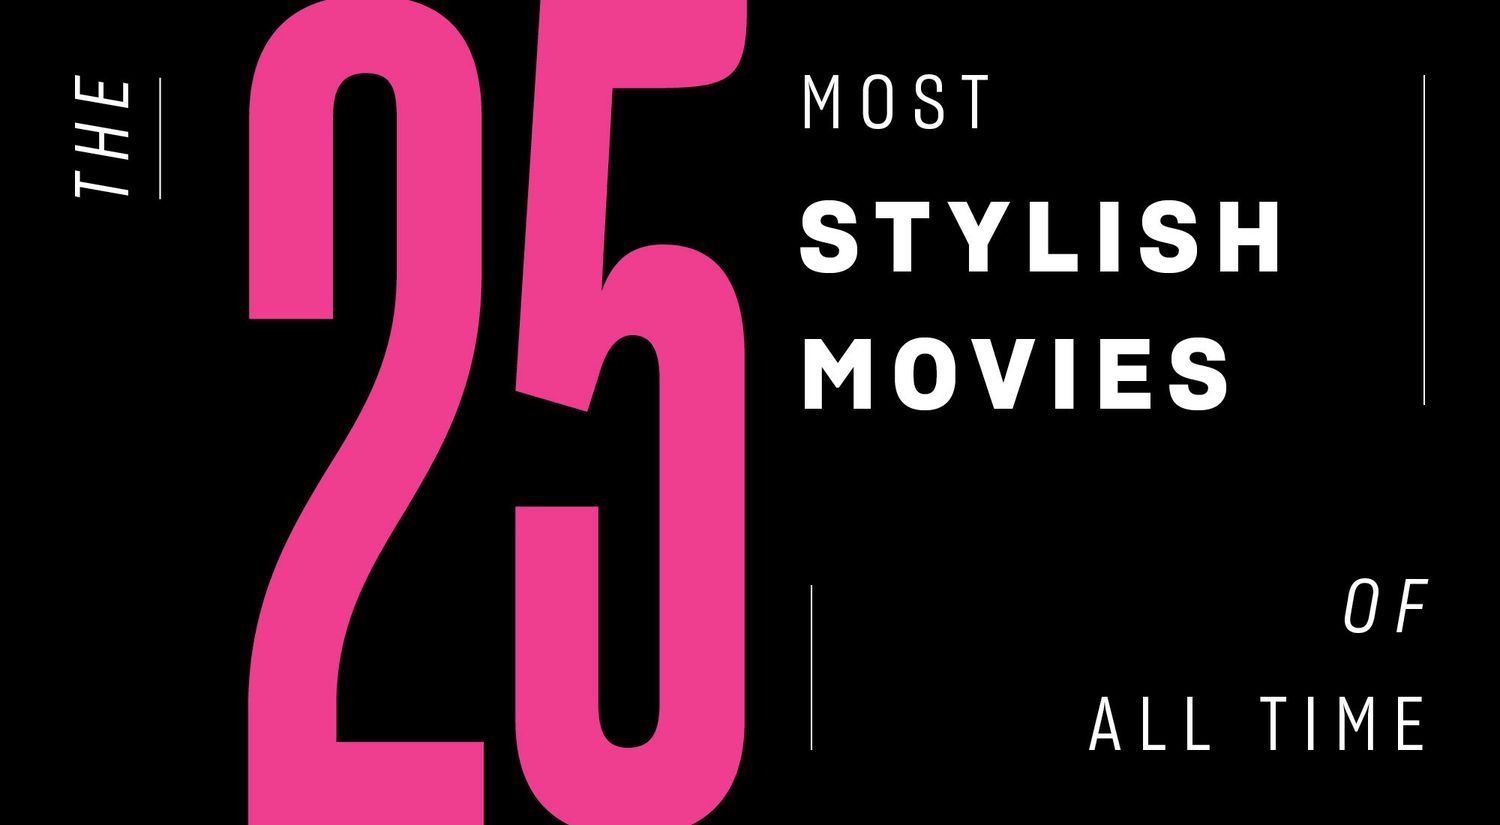 25 Most Stylish Movies